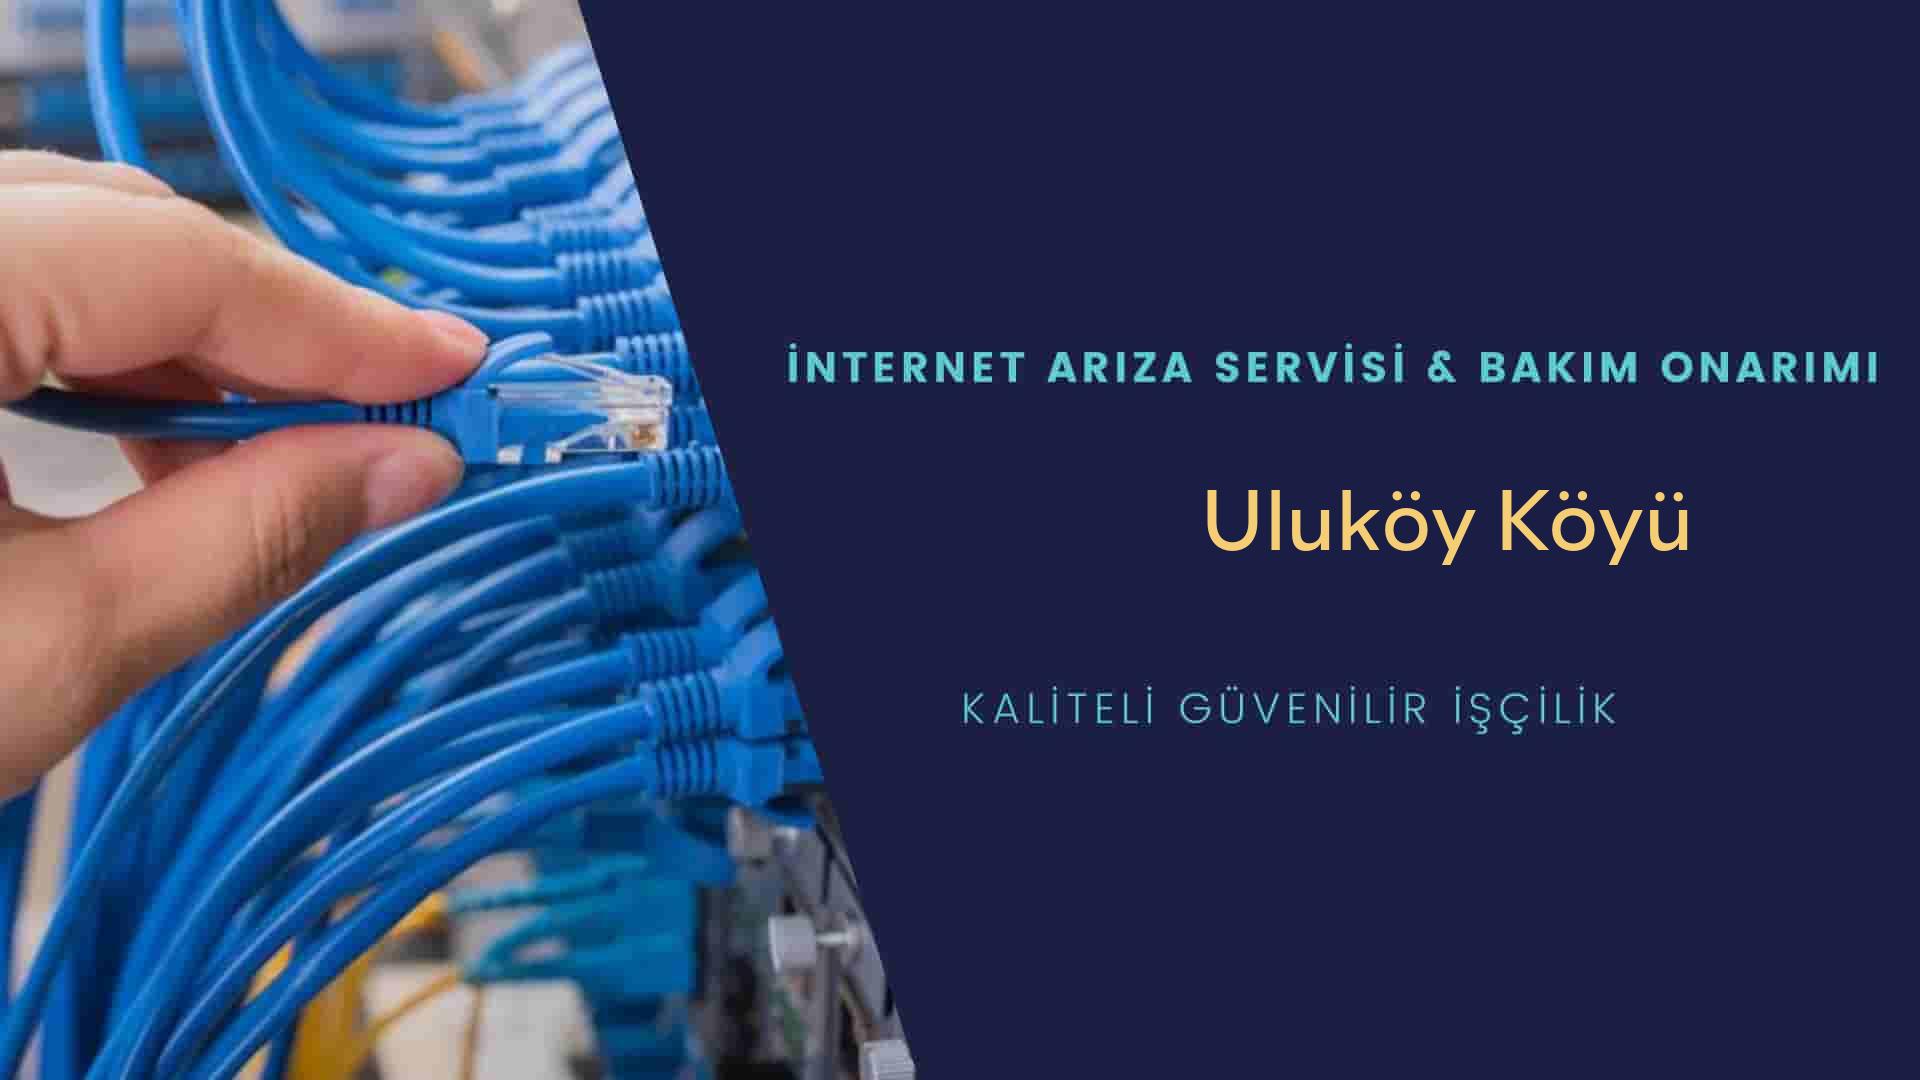 Uluköy Köyü internet kablosu çekimi yapan yerler veya elektrikçiler mi? arıyorsunuz doğru yerdesiniz o zaman sizlere 7/24 yardımcı olacak profesyonel ustalarımız bir telefon kadar yakındır size.